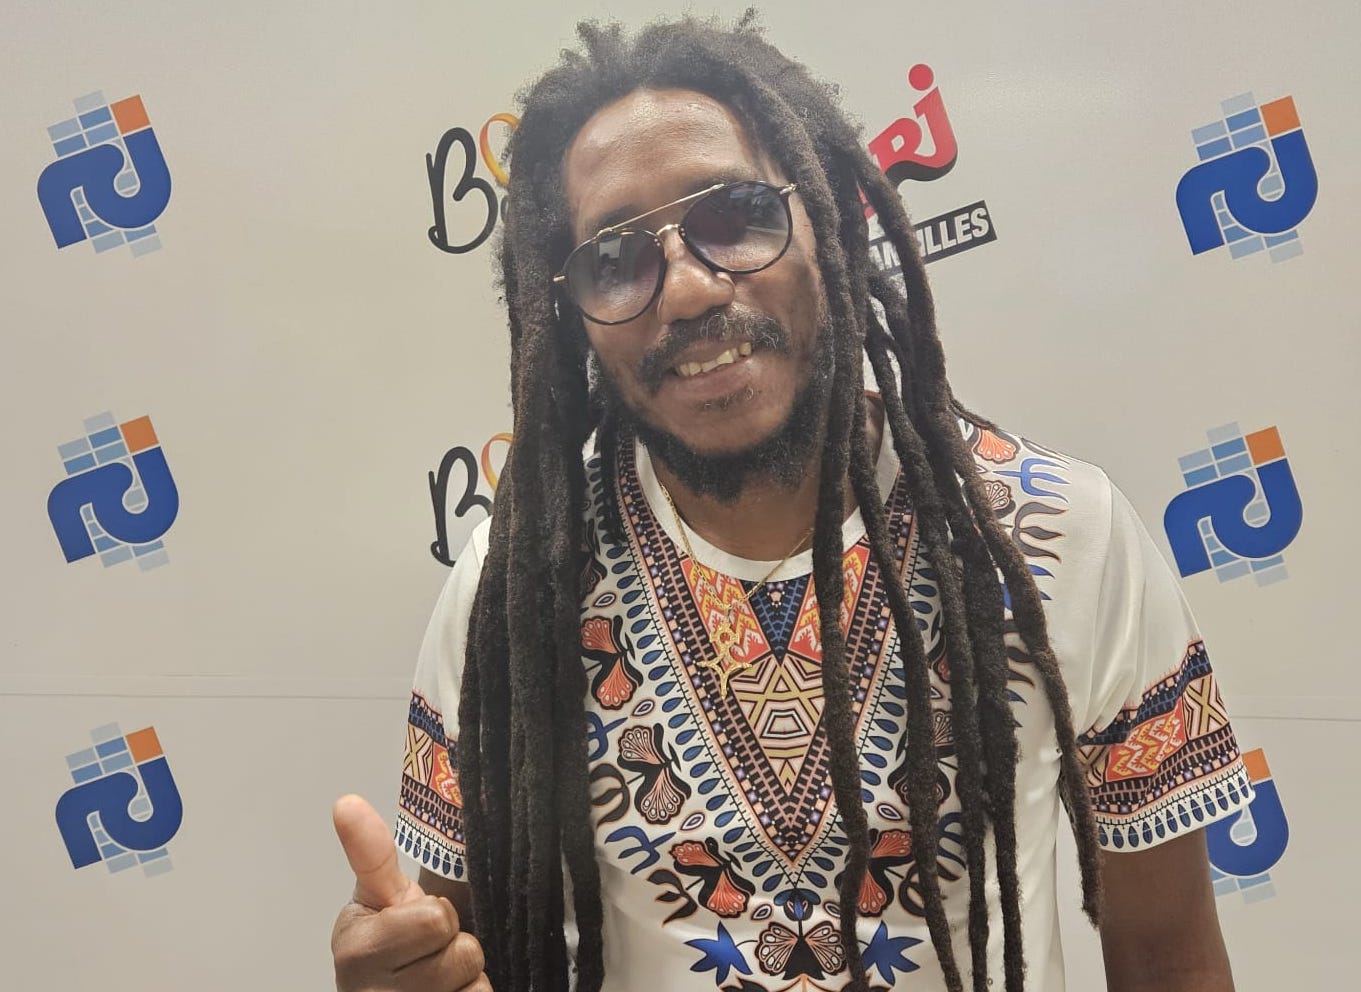     Saël, 25 ans de carrière, prépare deux concerts « inoubliables » en Martinique et en Guadeloupe 

